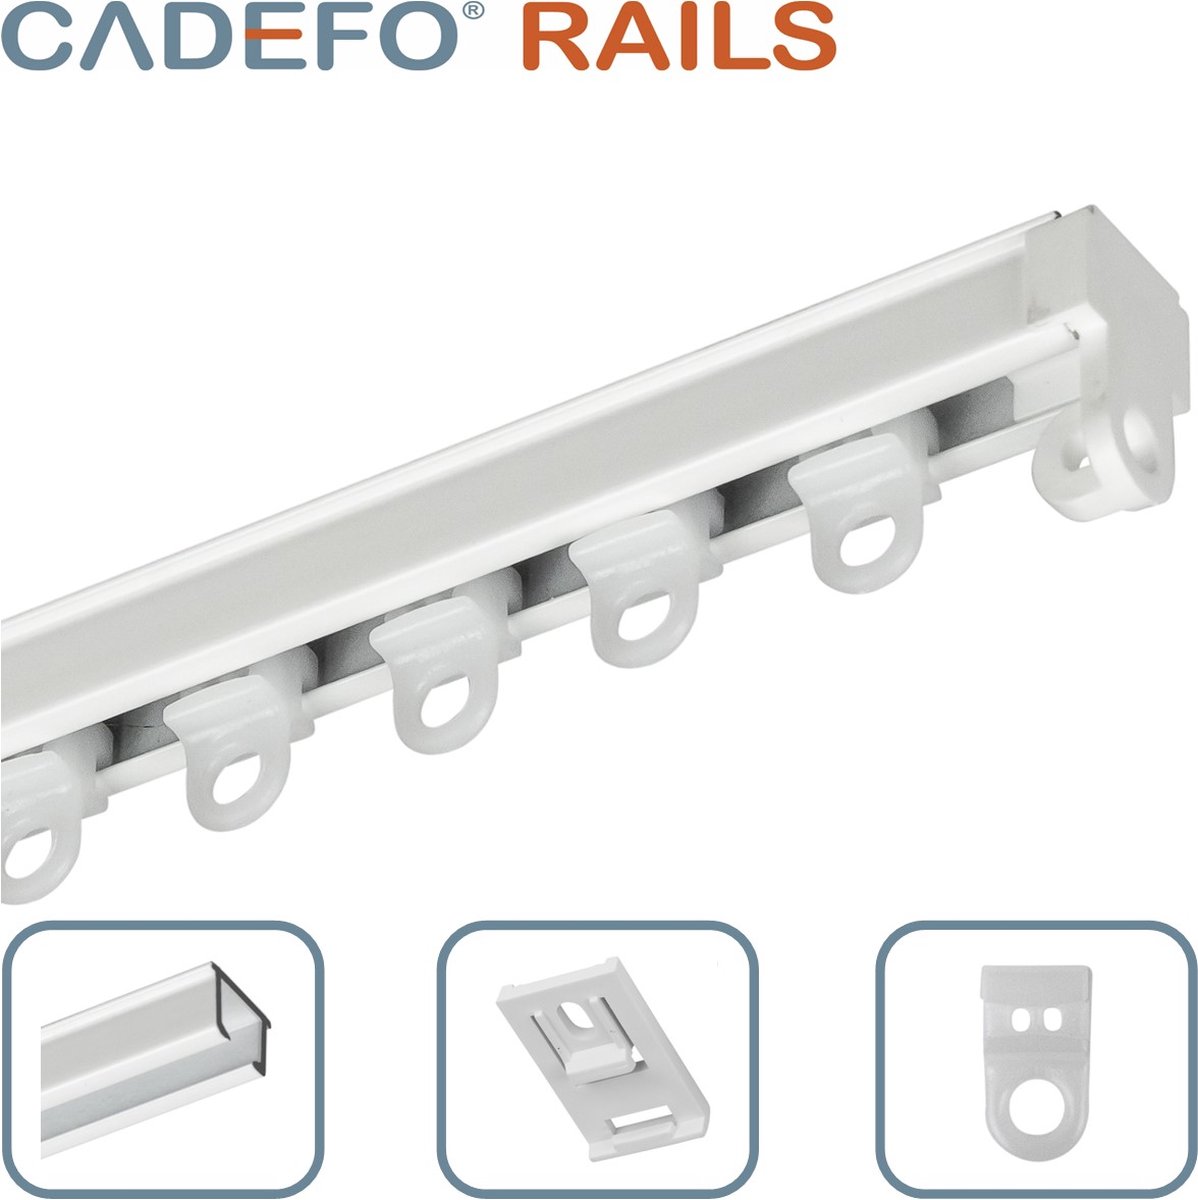 CADEFO RAILS (101 - 150 cm) Gordijnrails - Compleet op maat! - UIT 1 STUK - Leverbaar tot 6 meter - Plafondbevestiging - Lengte 107 cm